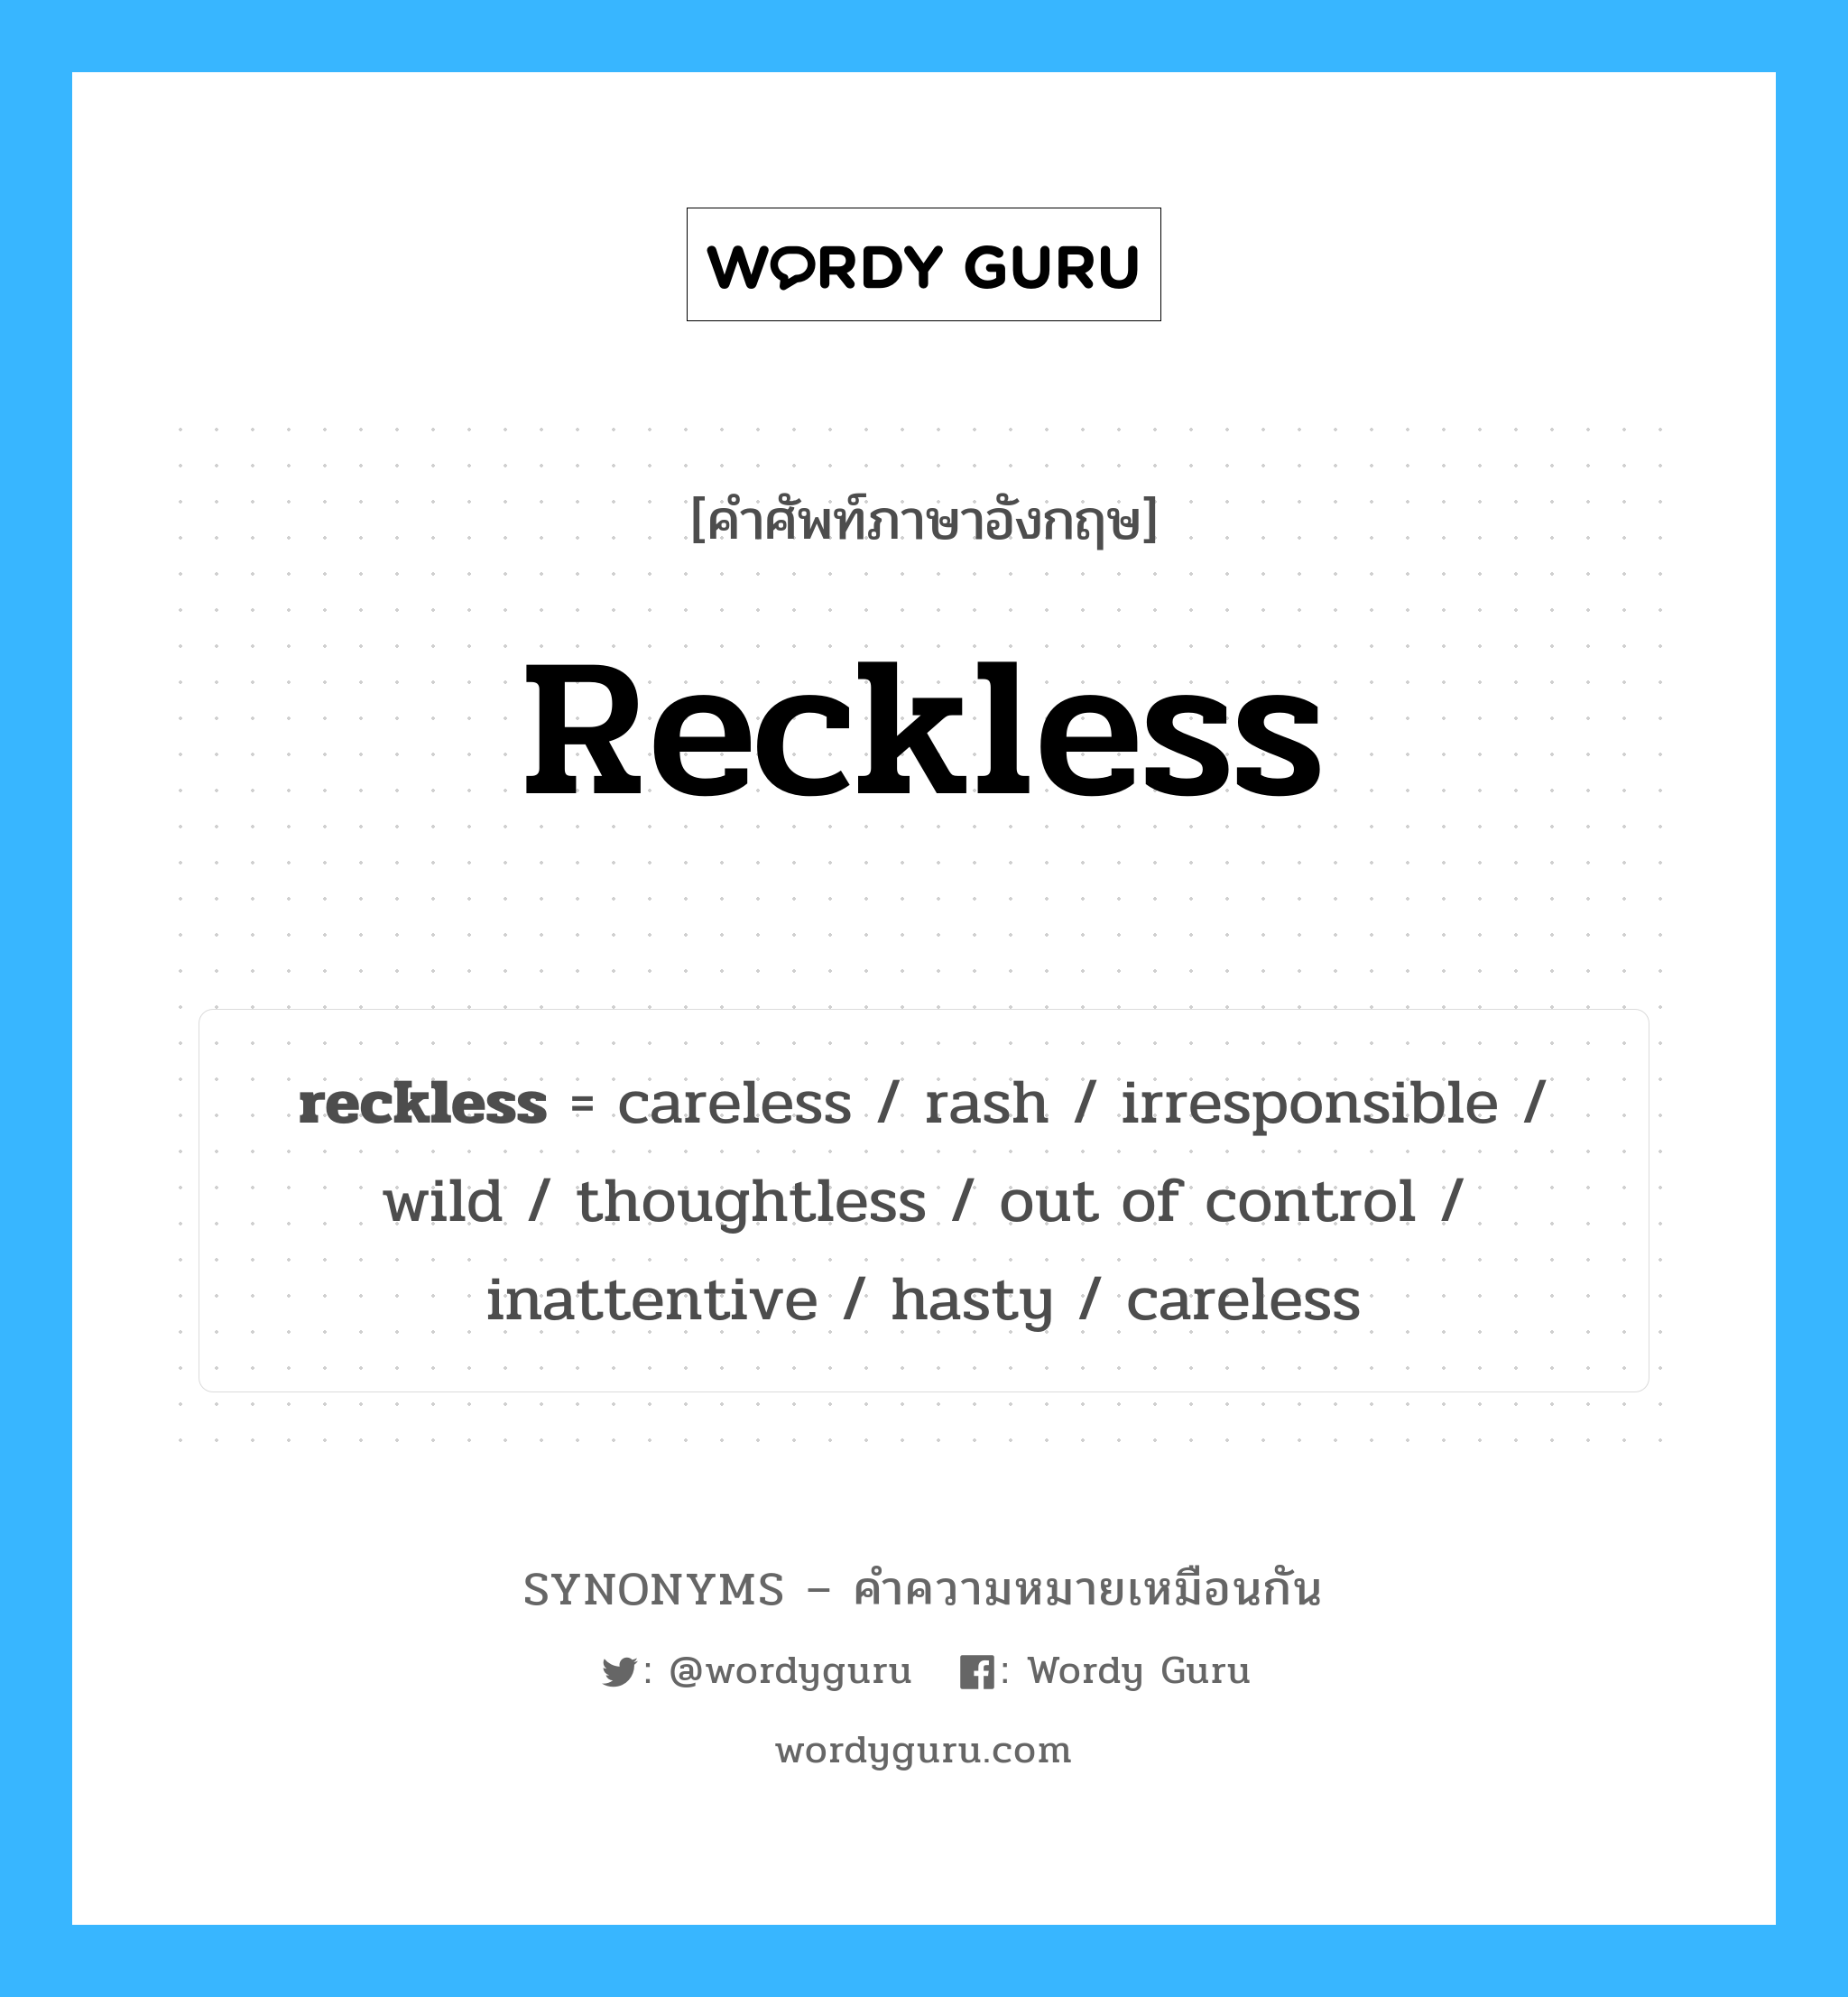 careless เป็นหนึ่งใน reckless และมีคำอื่น ๆ อีกดังนี้, คำศัพท์ภาษาอังกฤษ careless ความหมายคล้ายกันกับ reckless แปลว่า ไม่ระมัดระวัง หมวด reckless